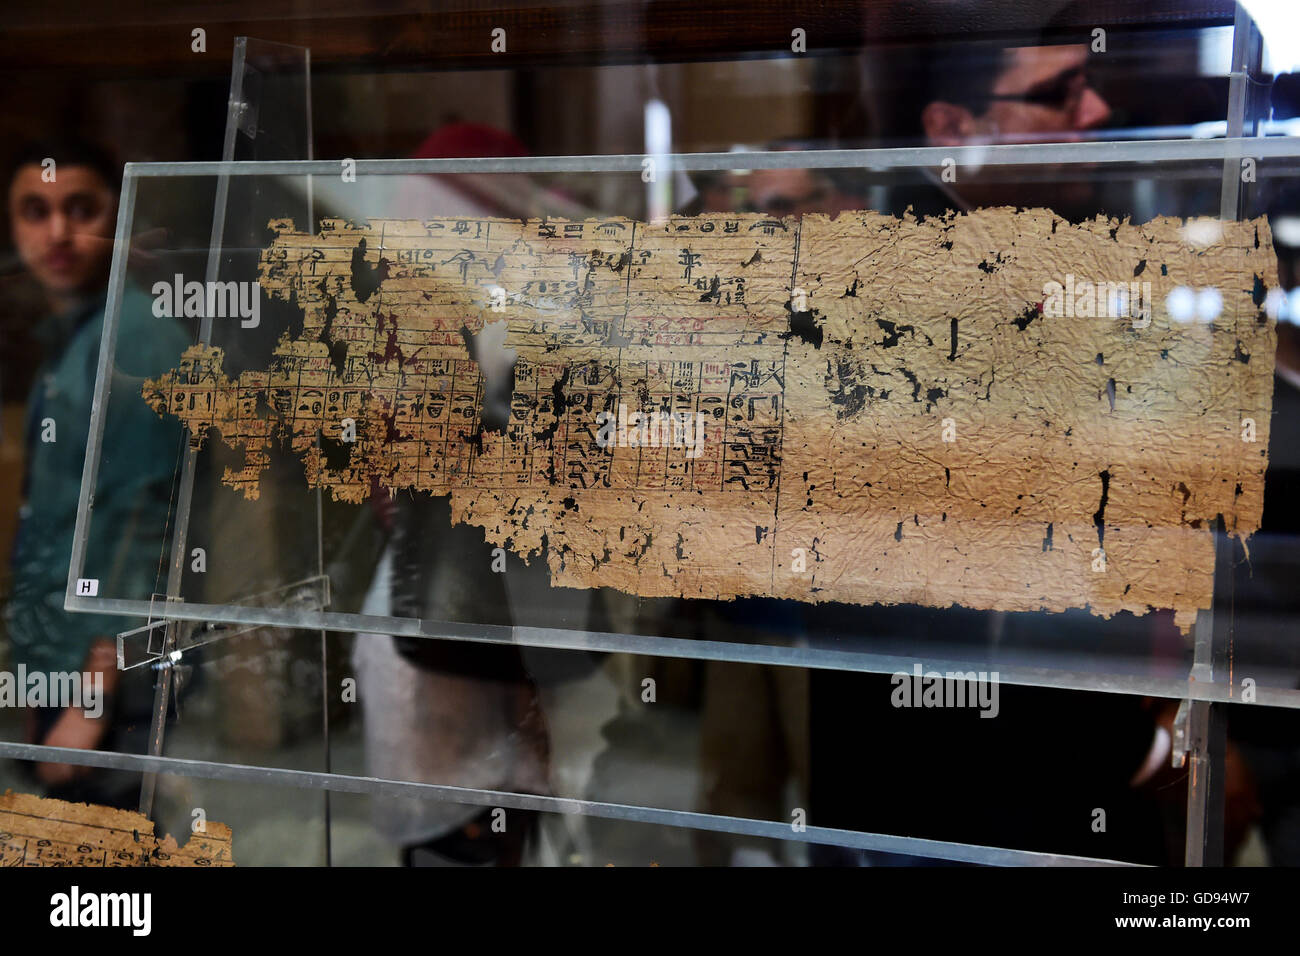 Le Caire. 14 juillet, 2016. Une partie de roi Khufu papyri du est affiché pour la première fois au Musée égyptien du Caire, Égypte le 14 juillet 2016. Le Musée égyptien du Caire a présenté pour la première fois une collection de papyrus qui remontent au roi Khufu, qui a régné au cours de la quatrième dynastie dans la première moitié de l'Ancien Empire (26e siècle avant J.-C.) dans l'Egypte ancienne. © Zhao Dingzhe/Xinhua/Alamy Live News Banque D'Images